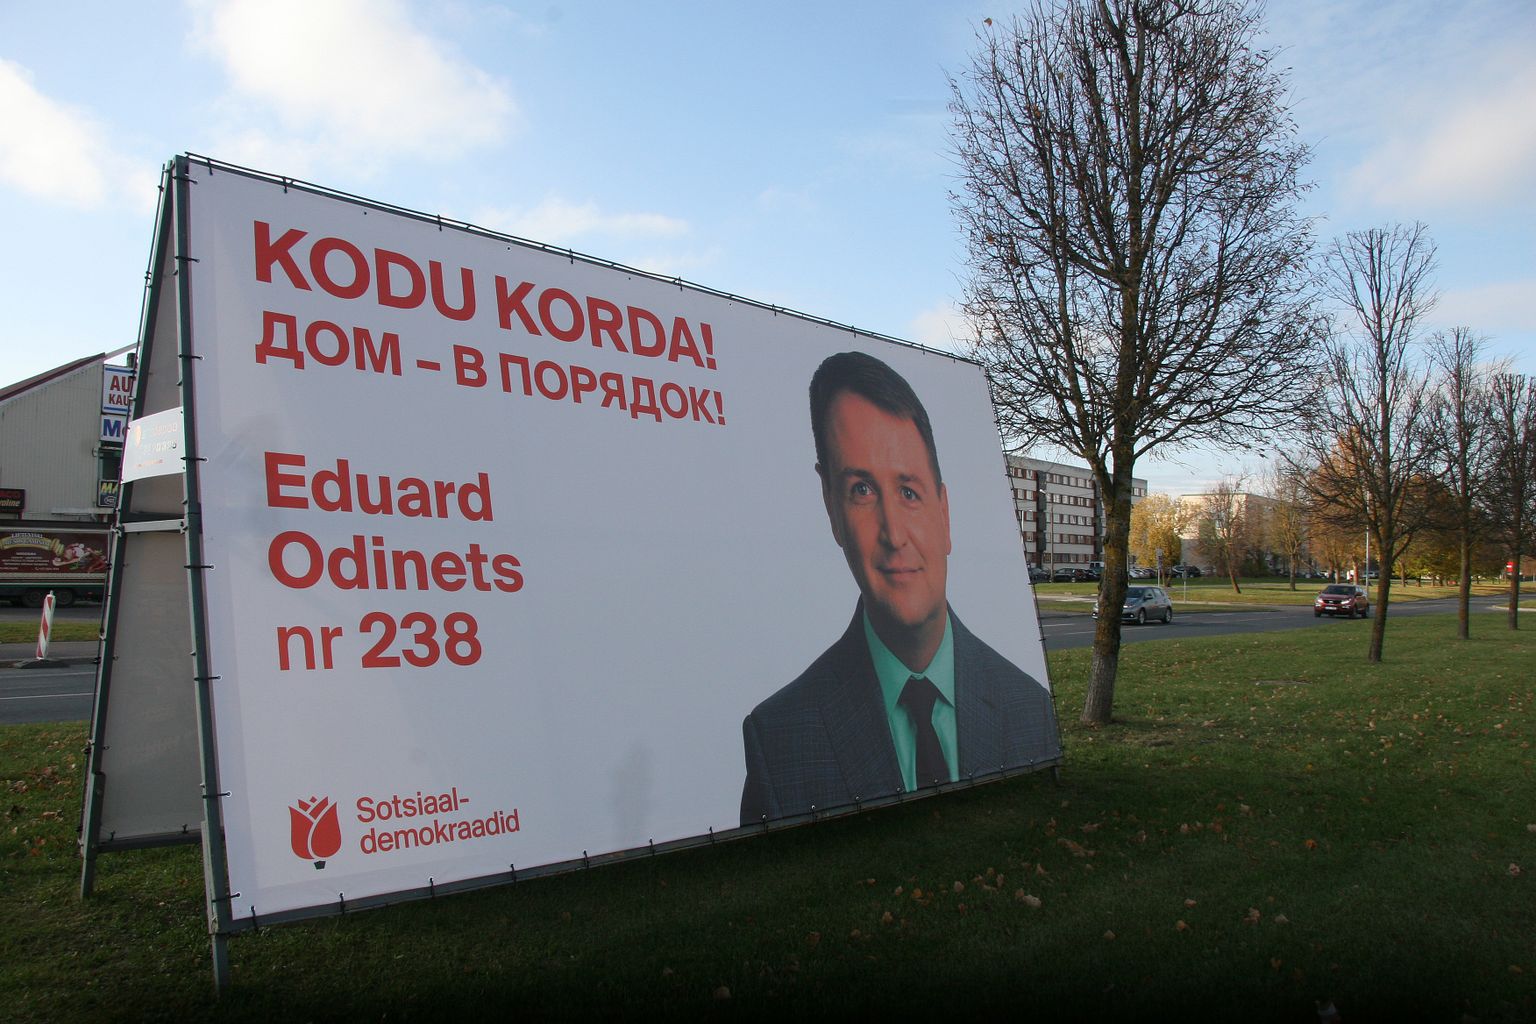 В Кохтла-Ярве больше всего голосов - 613 - набрал многолетний  лидер оппозиции соцдем Эдуард Одинец.